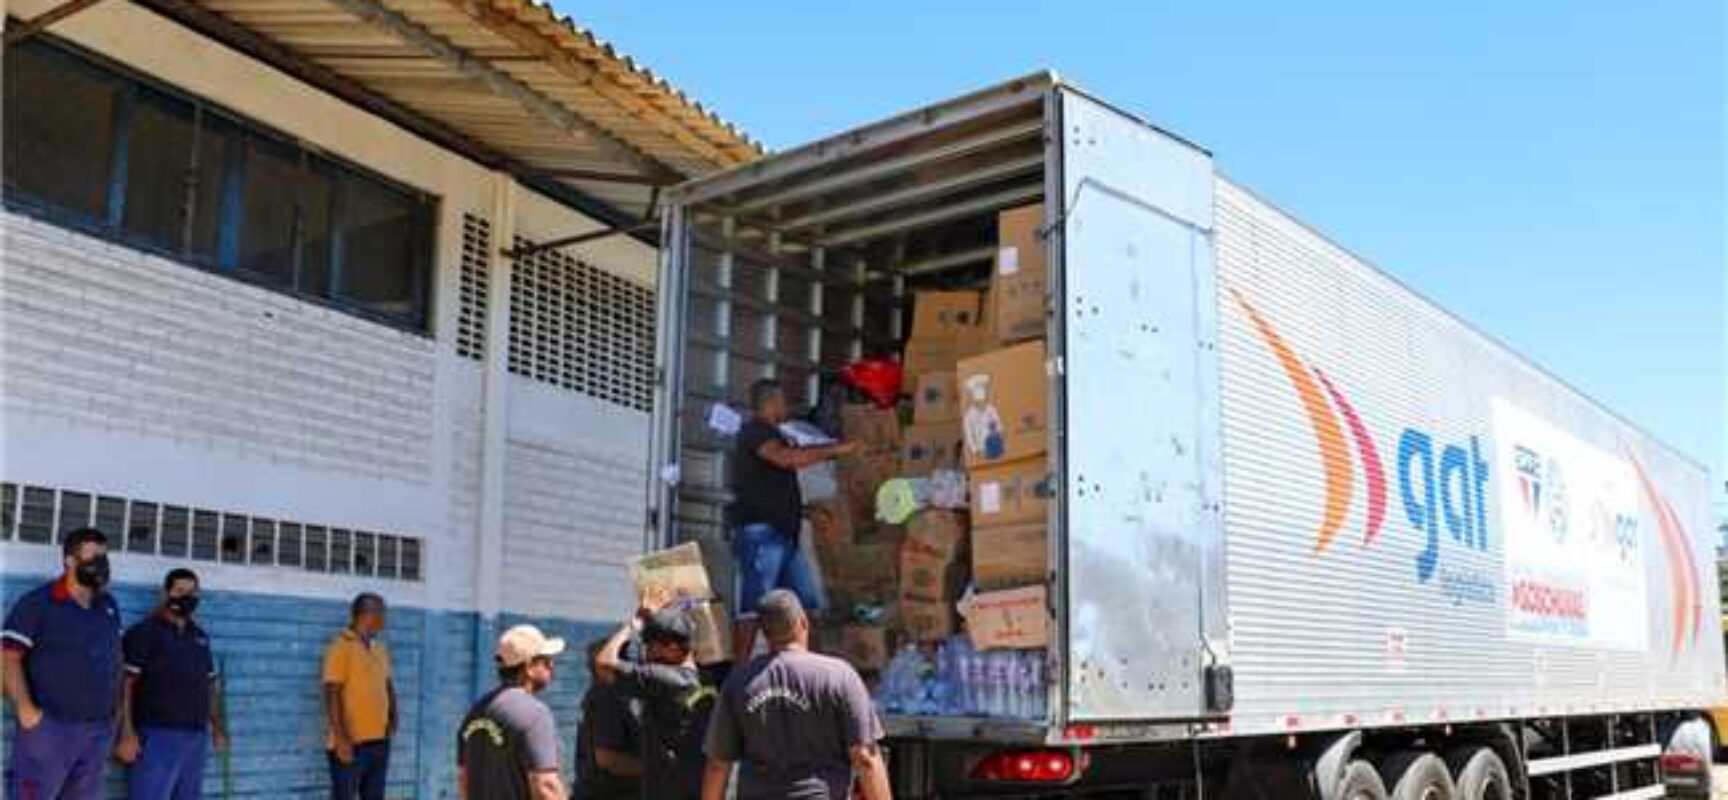 Clubes São Paulo e Bahia doam 40 toneladas de alimentos para vítimas das chuvas em Ilhéus e região